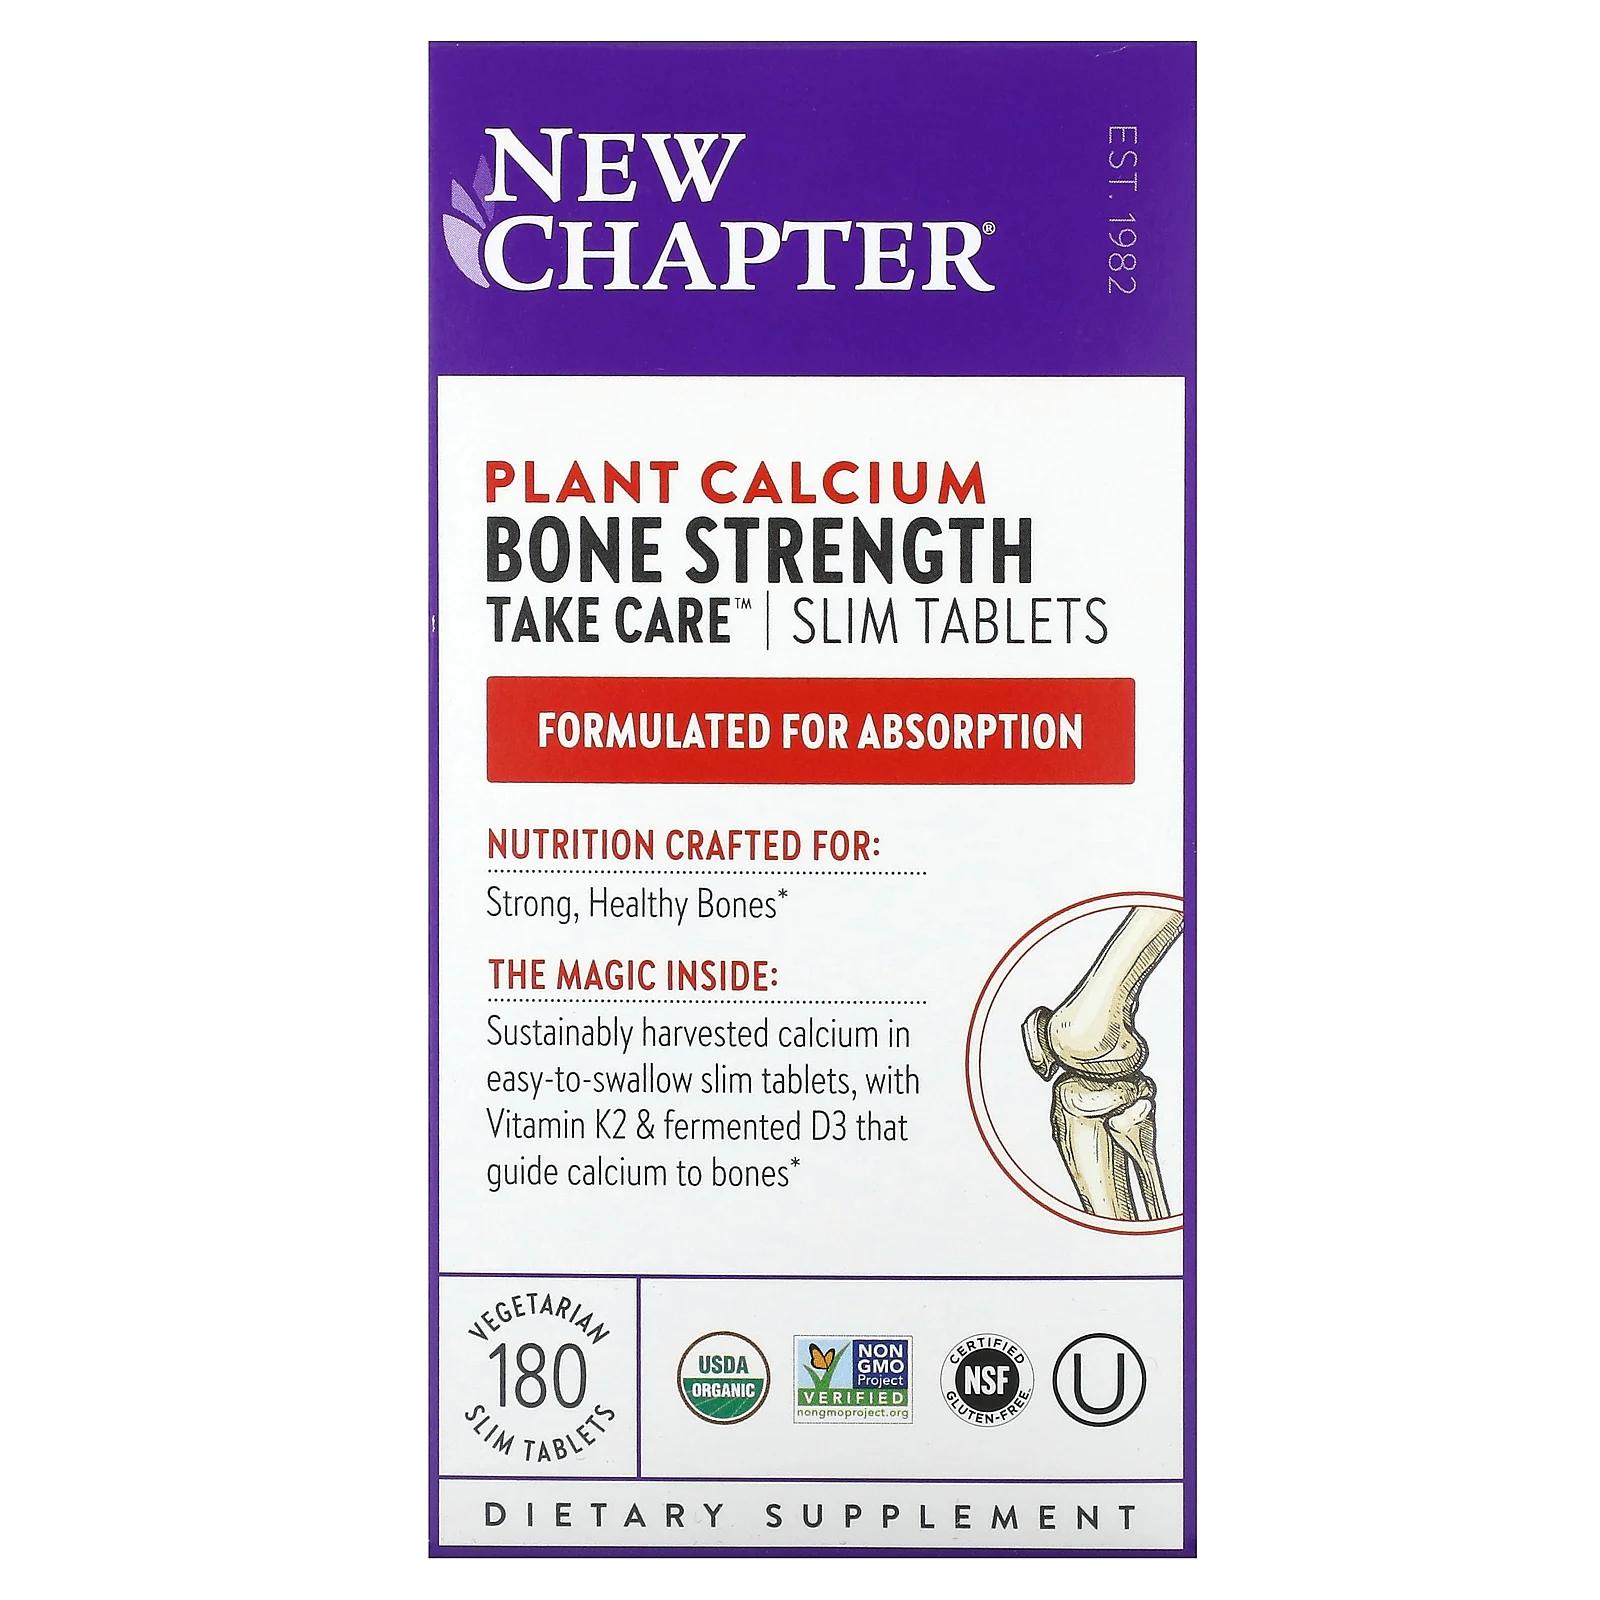 new chapter bone strength take care добавка для укрепления костей 180 маленьких растительных таблеток New Chapter Прочность костей будь осторожен пищевая добавка для поддержания прочности костей 180 маленьких таблеток